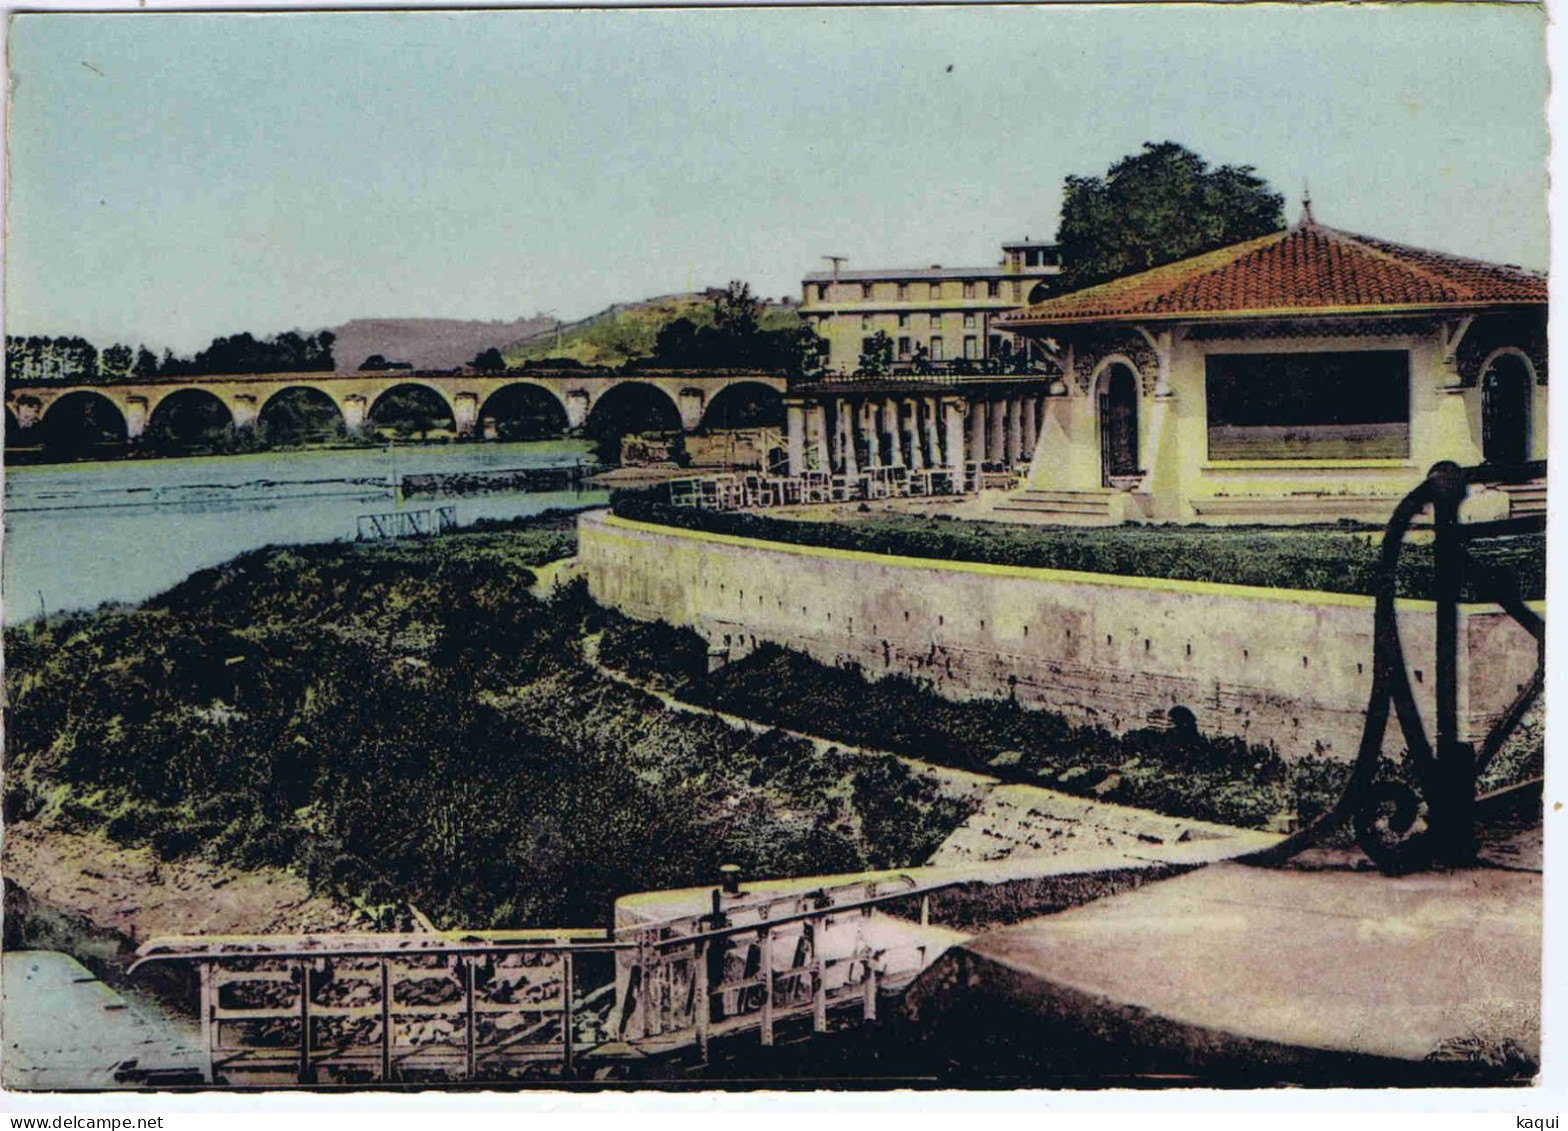 TARN Et GARONNE - MOISSAC - Station Uvale - Le Tarn - L'Uvarium Et Le Pont Napoléon - Combier Imp. - Moissac